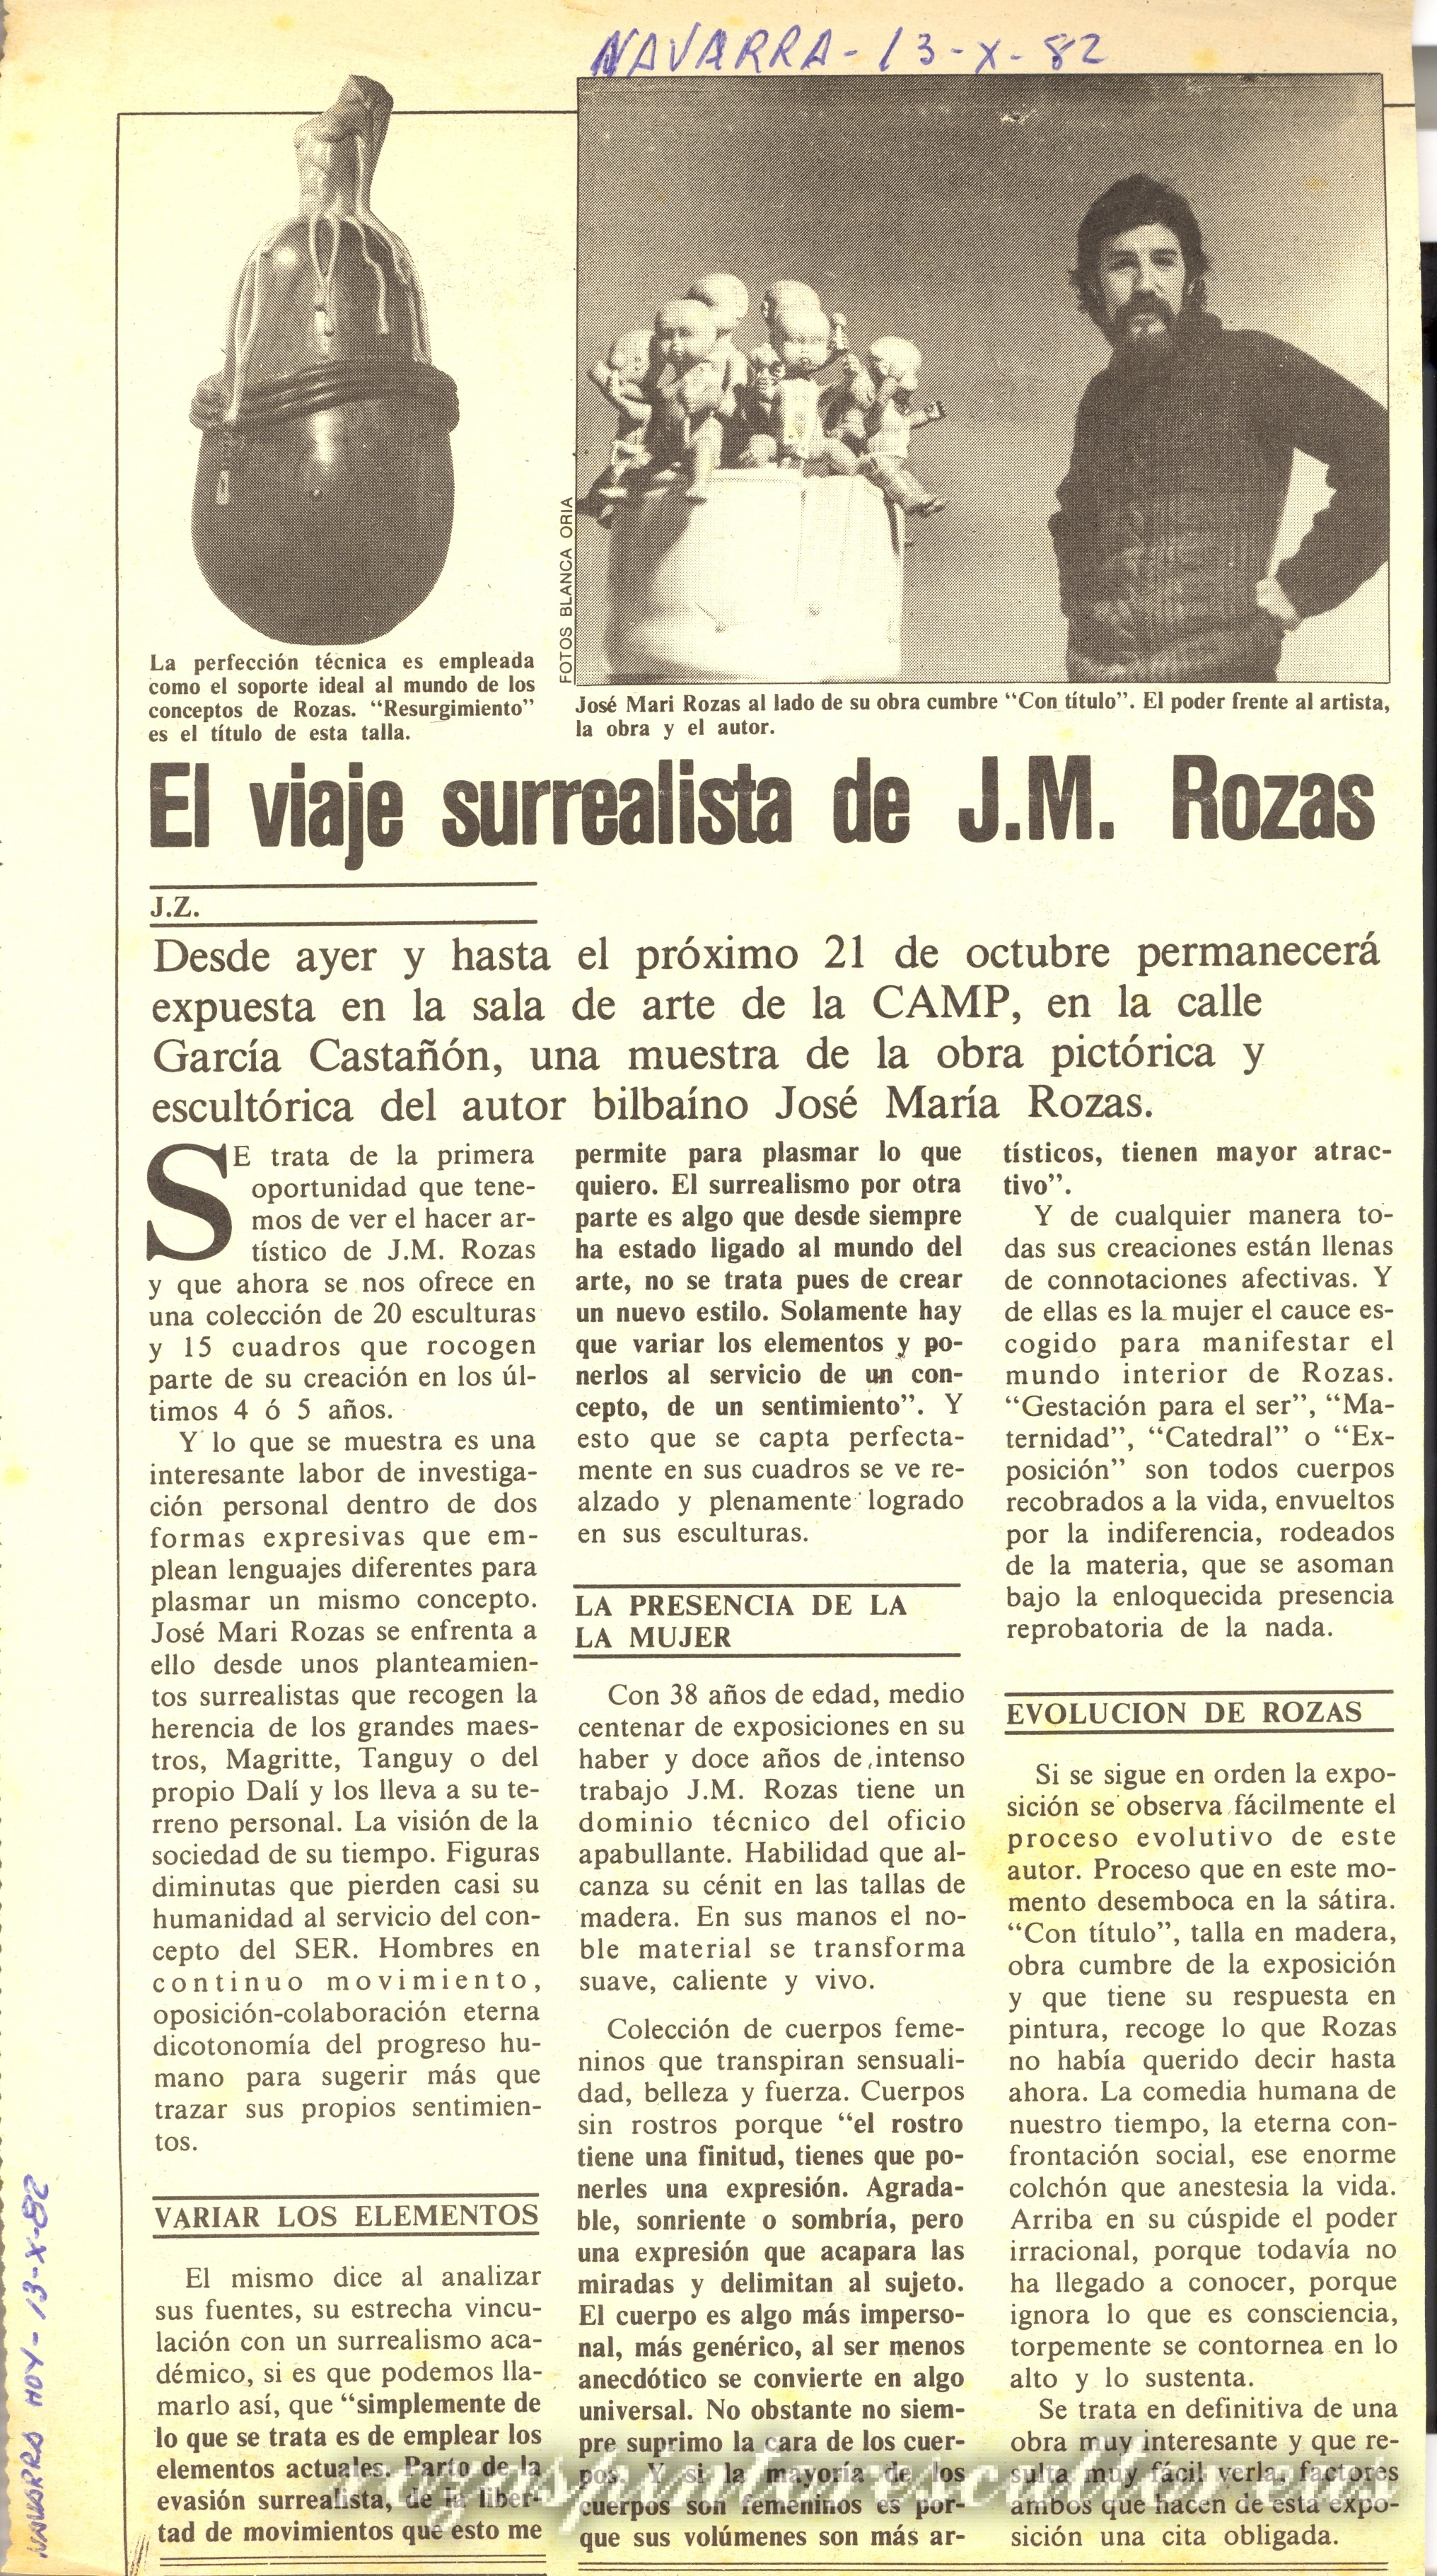 1982 Navarra Hoy – El viaje surrealista de J.M. Rozas